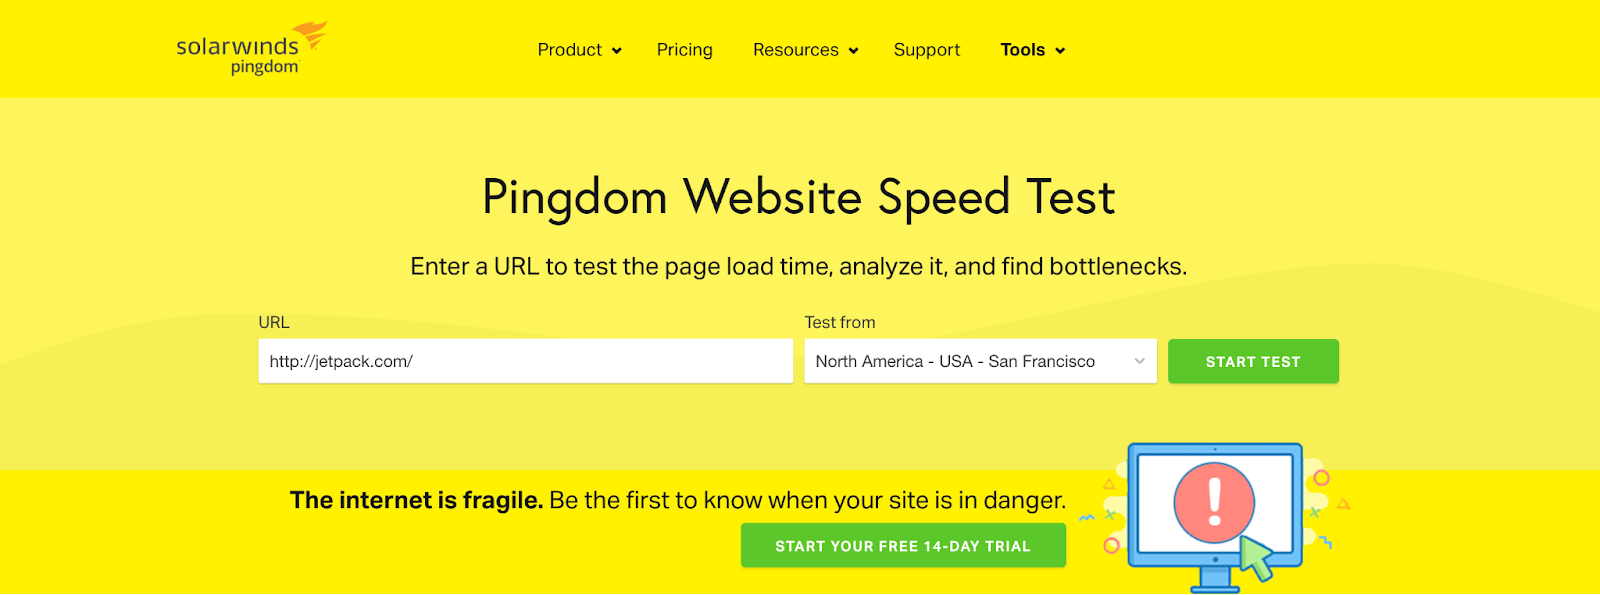 Pingdom website speed test dashboard